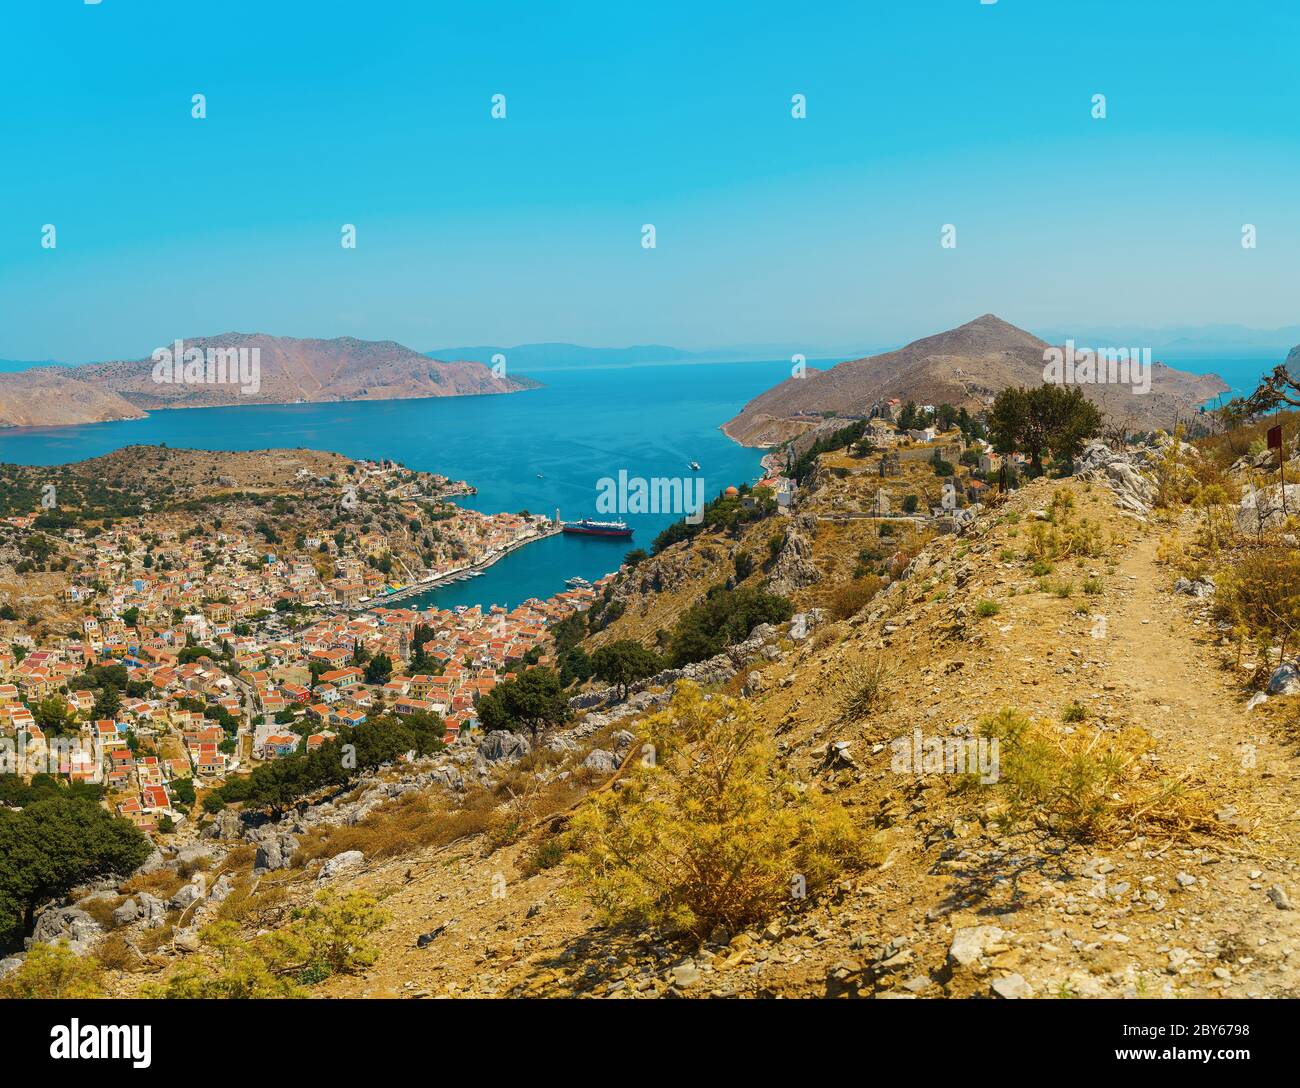 panoramic viewer online